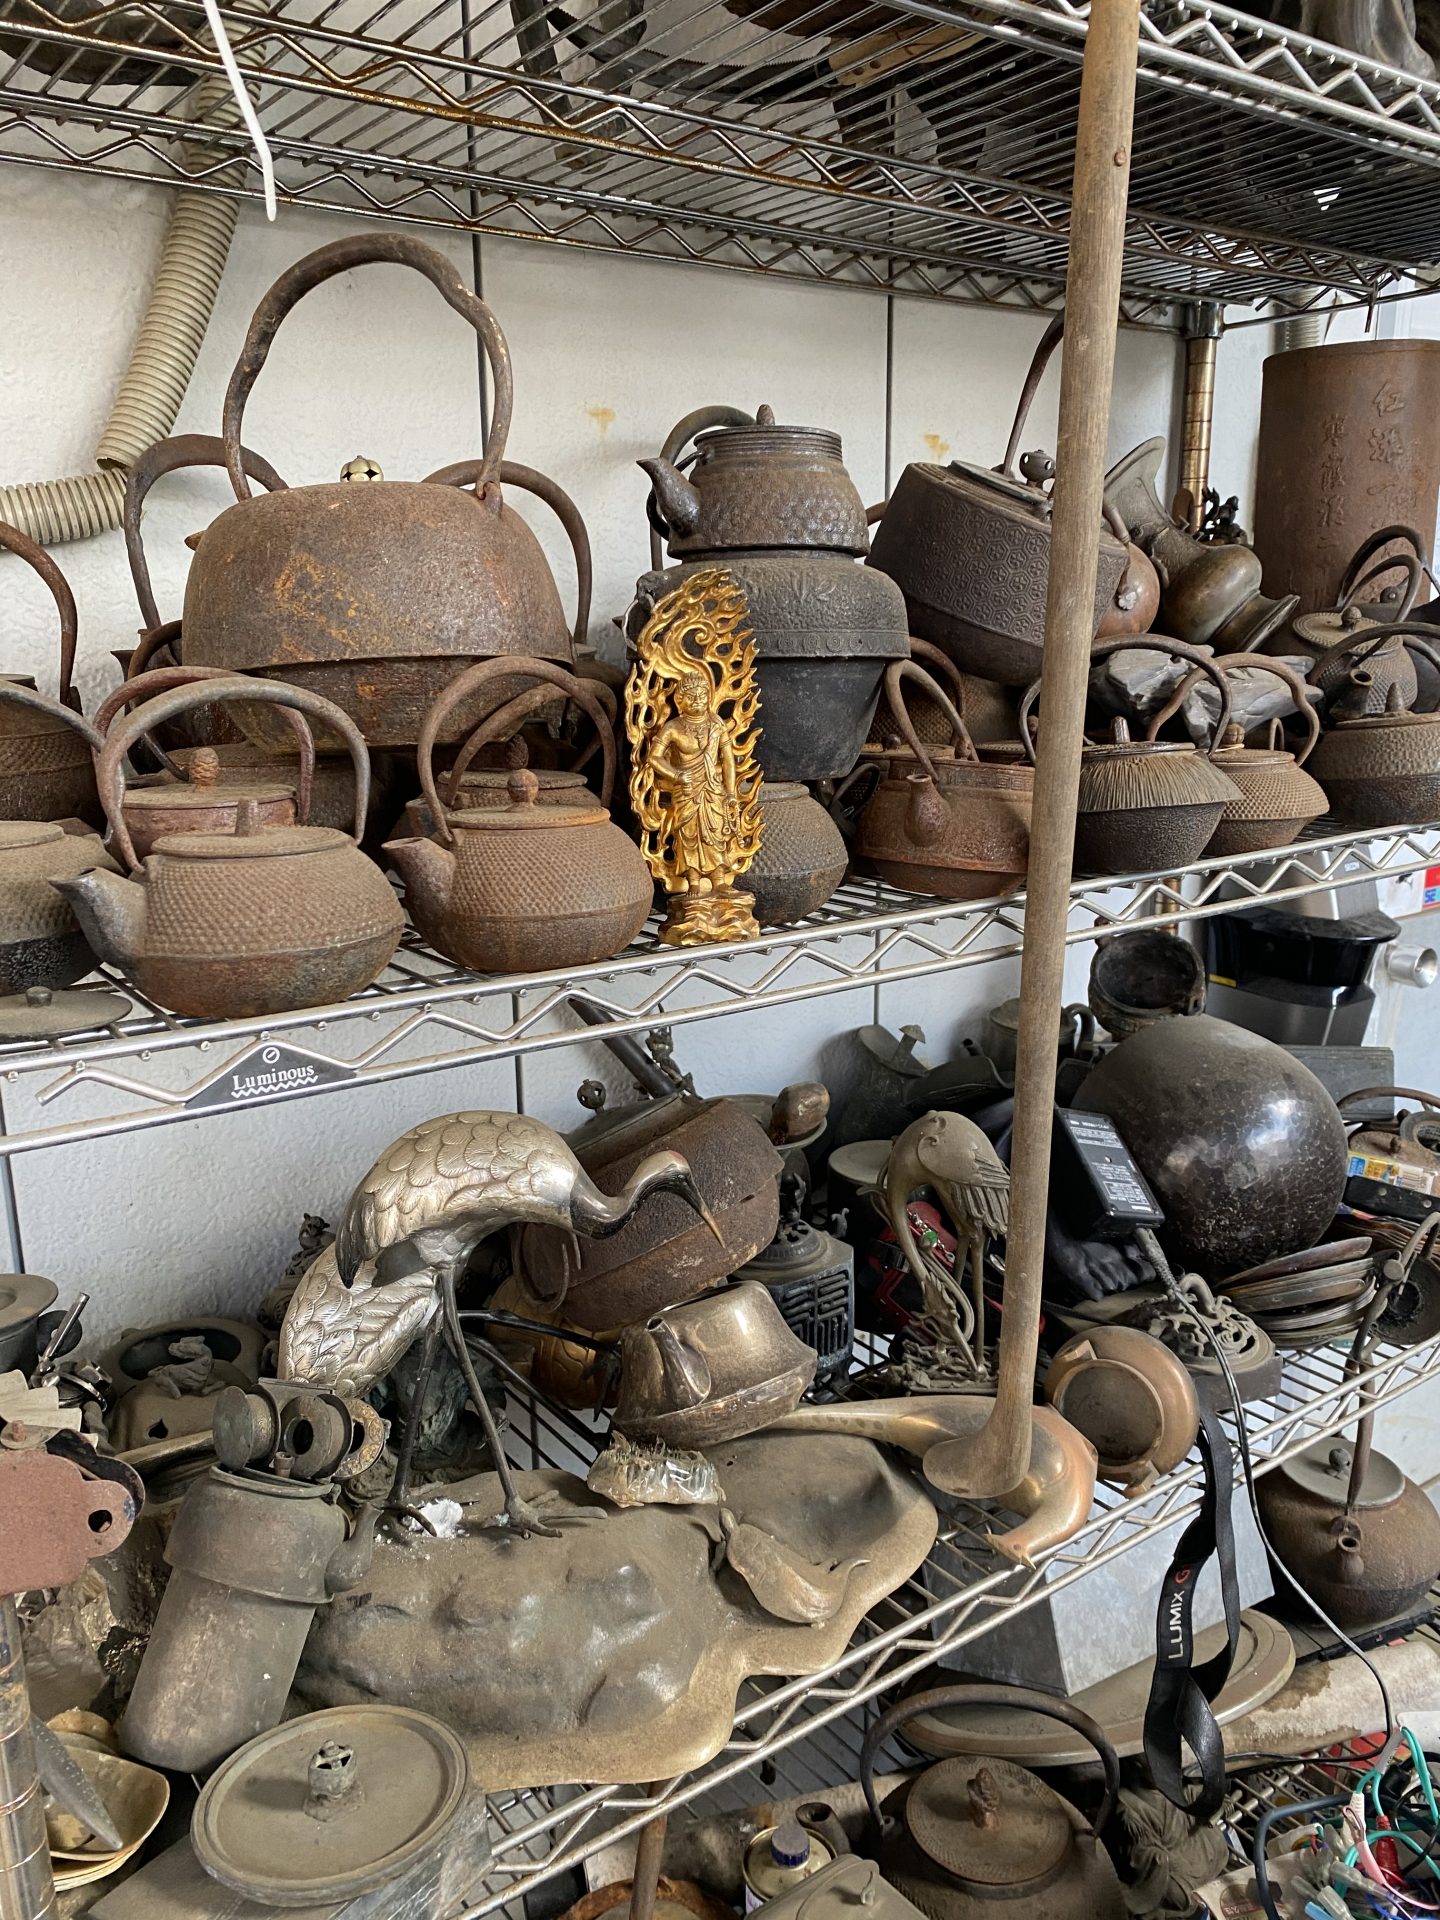 京都府京都市にて 鉄瓶 銅器 骨董品の買い付けに行ってきました ...